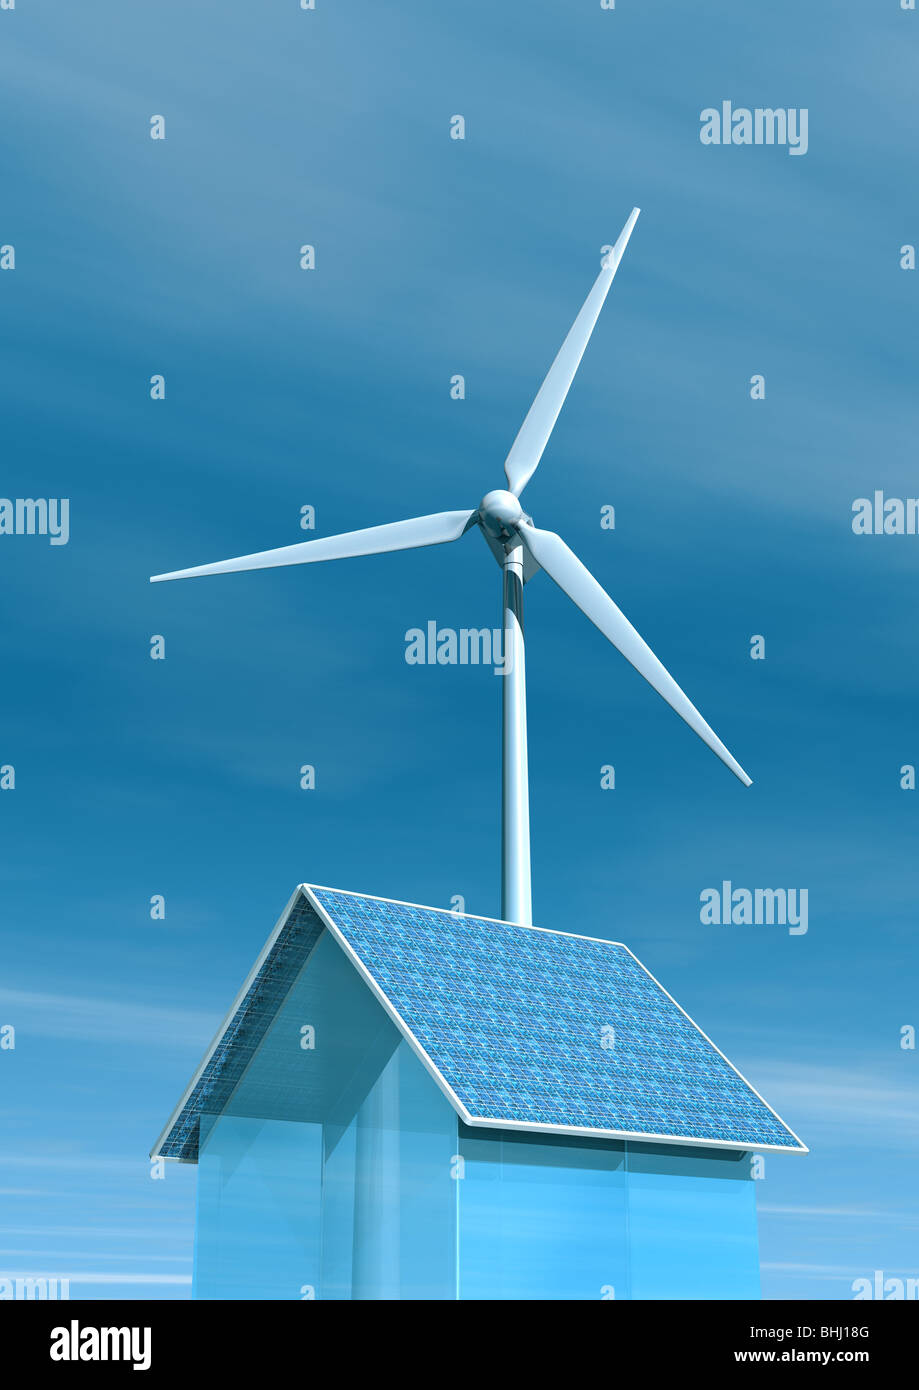 Solar-Energie-Haus und eine Windkraftanlage - Solarstrom Haus Und Windkraftanlage Stockfoto